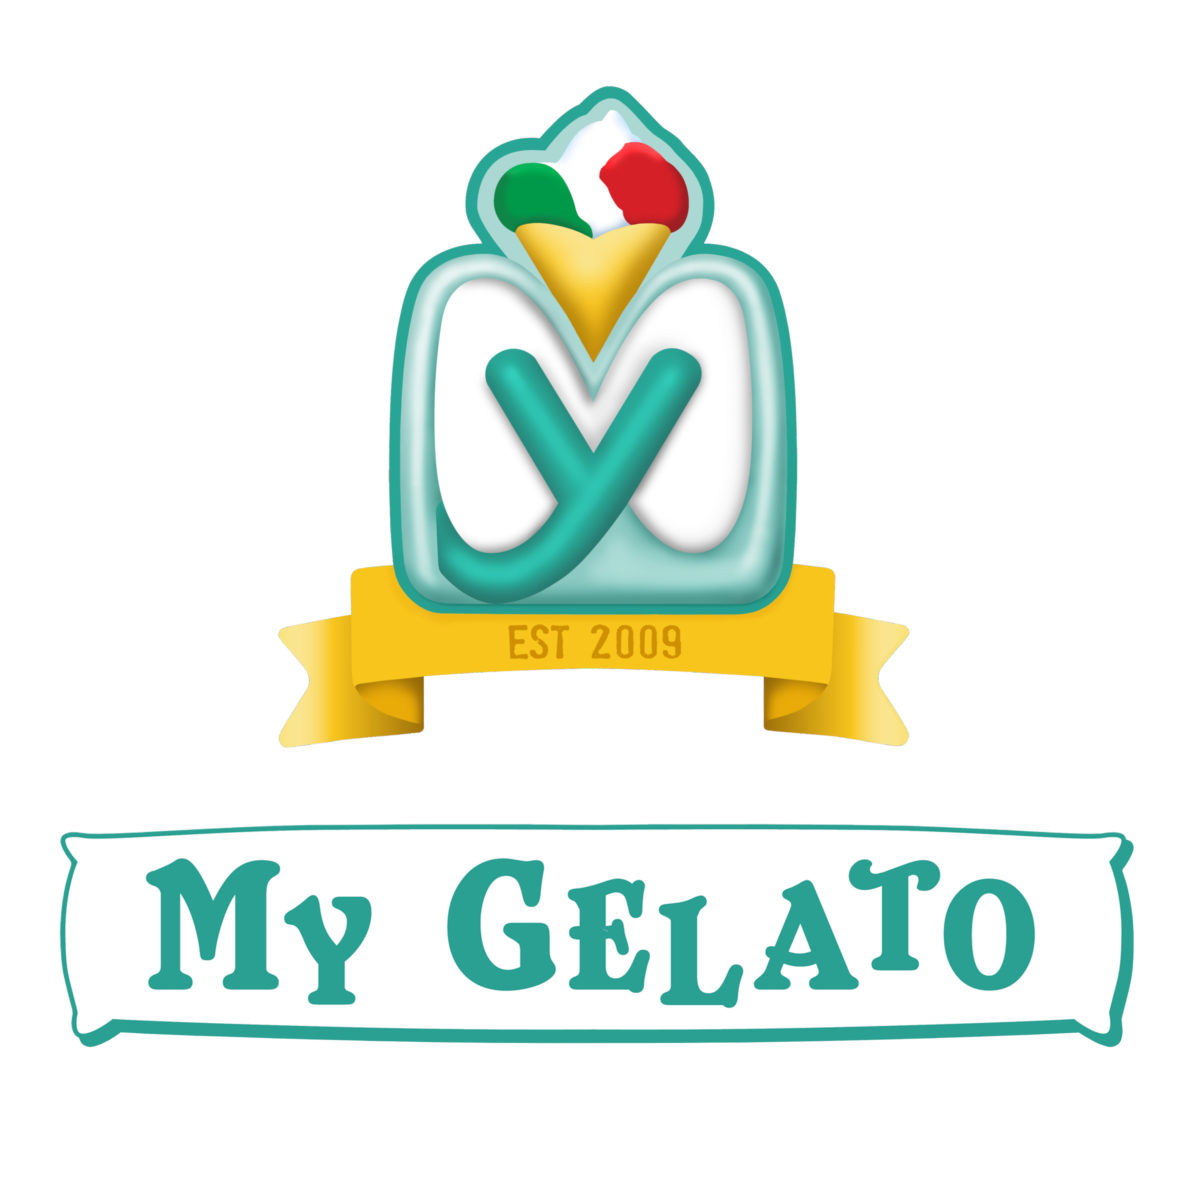 My Gelato logo stacked